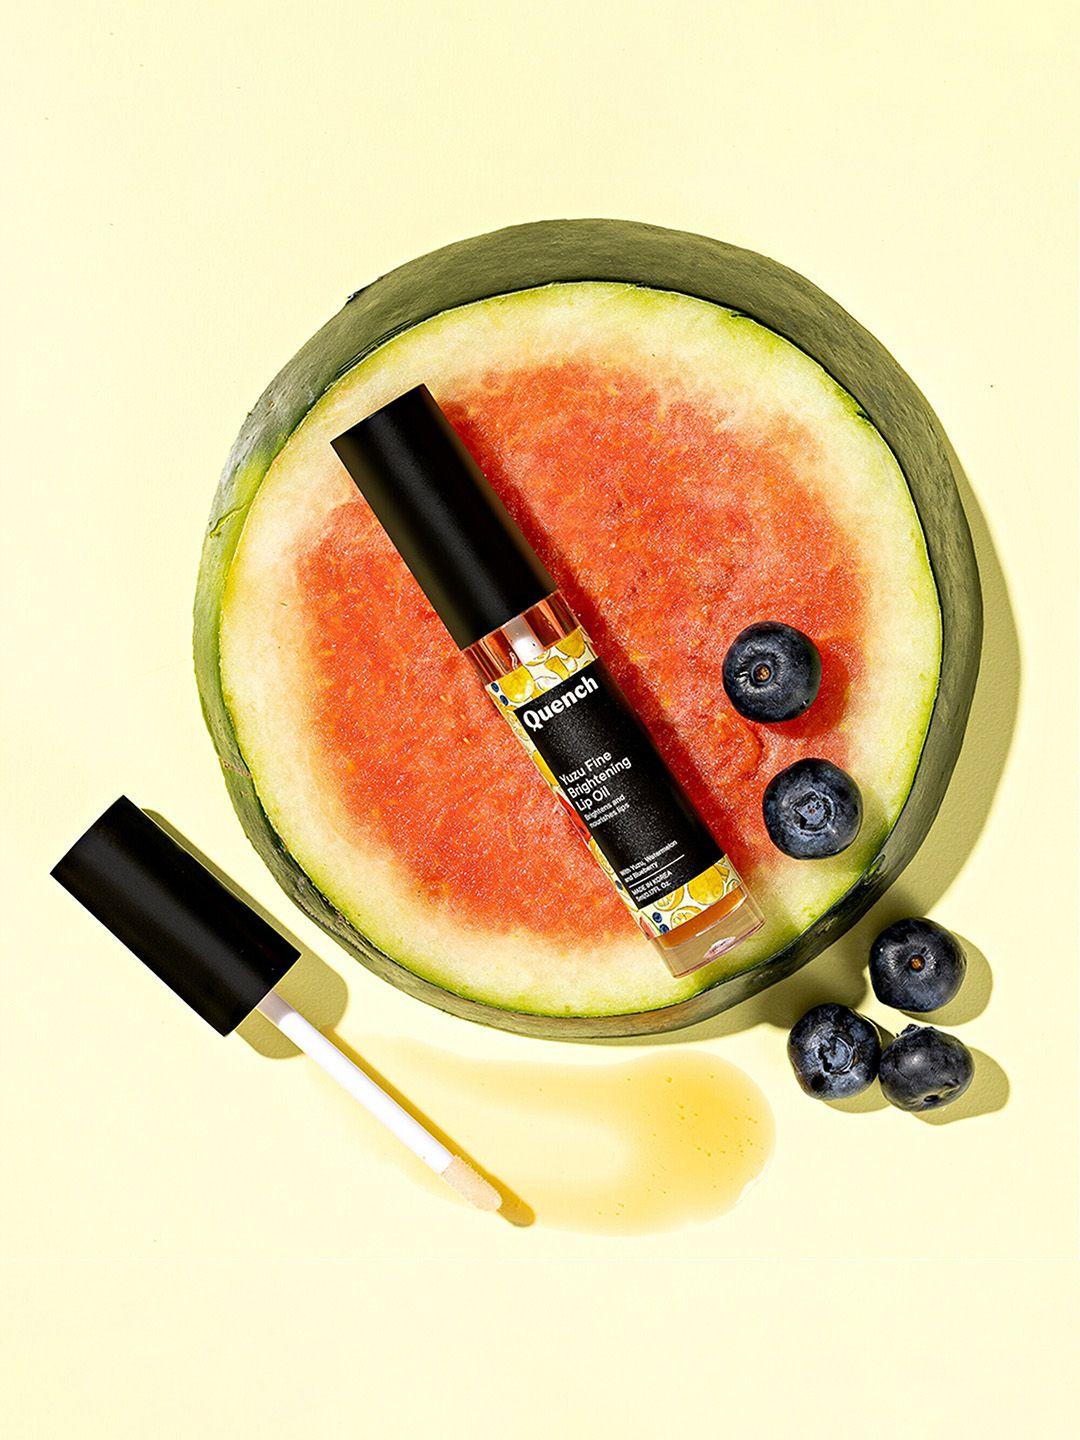 quench botanics yuzu fine brightening lip oil with blueberry watermelon & orange - 5 ml